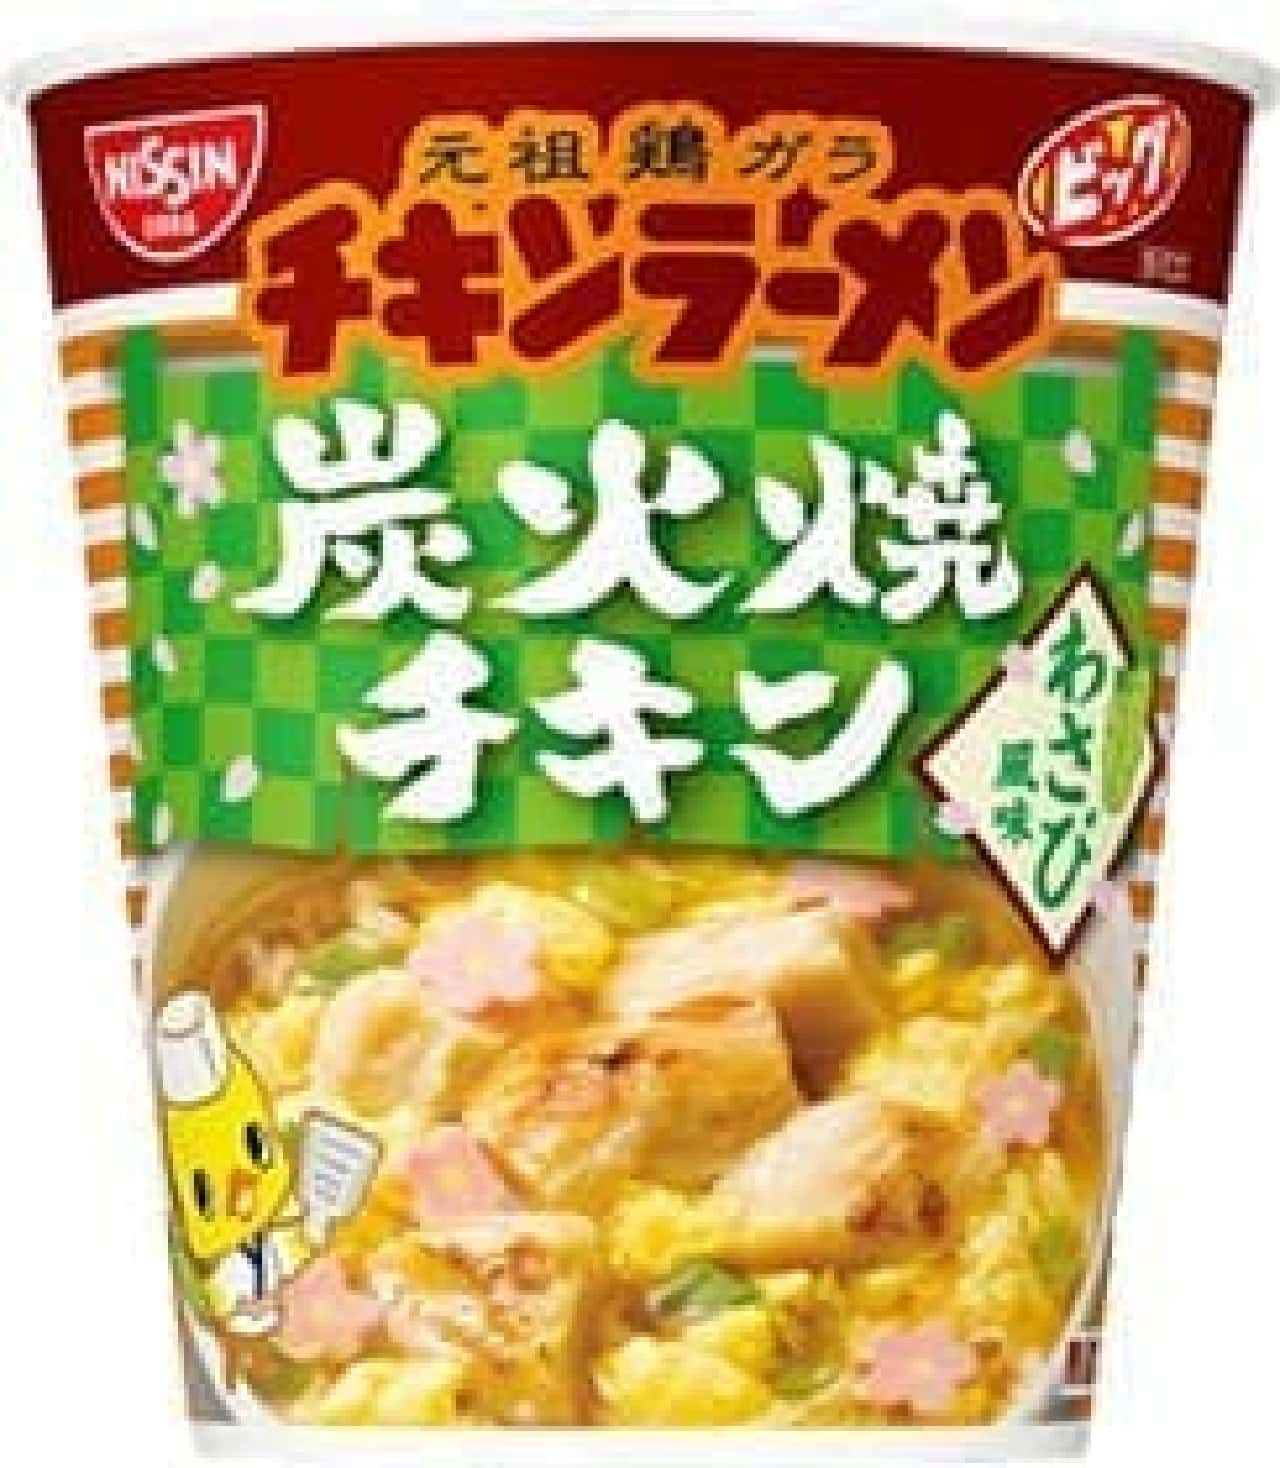 "Chicken Ramen Big Cup Charcoal Grilled Chicken Wasabi Flavor"